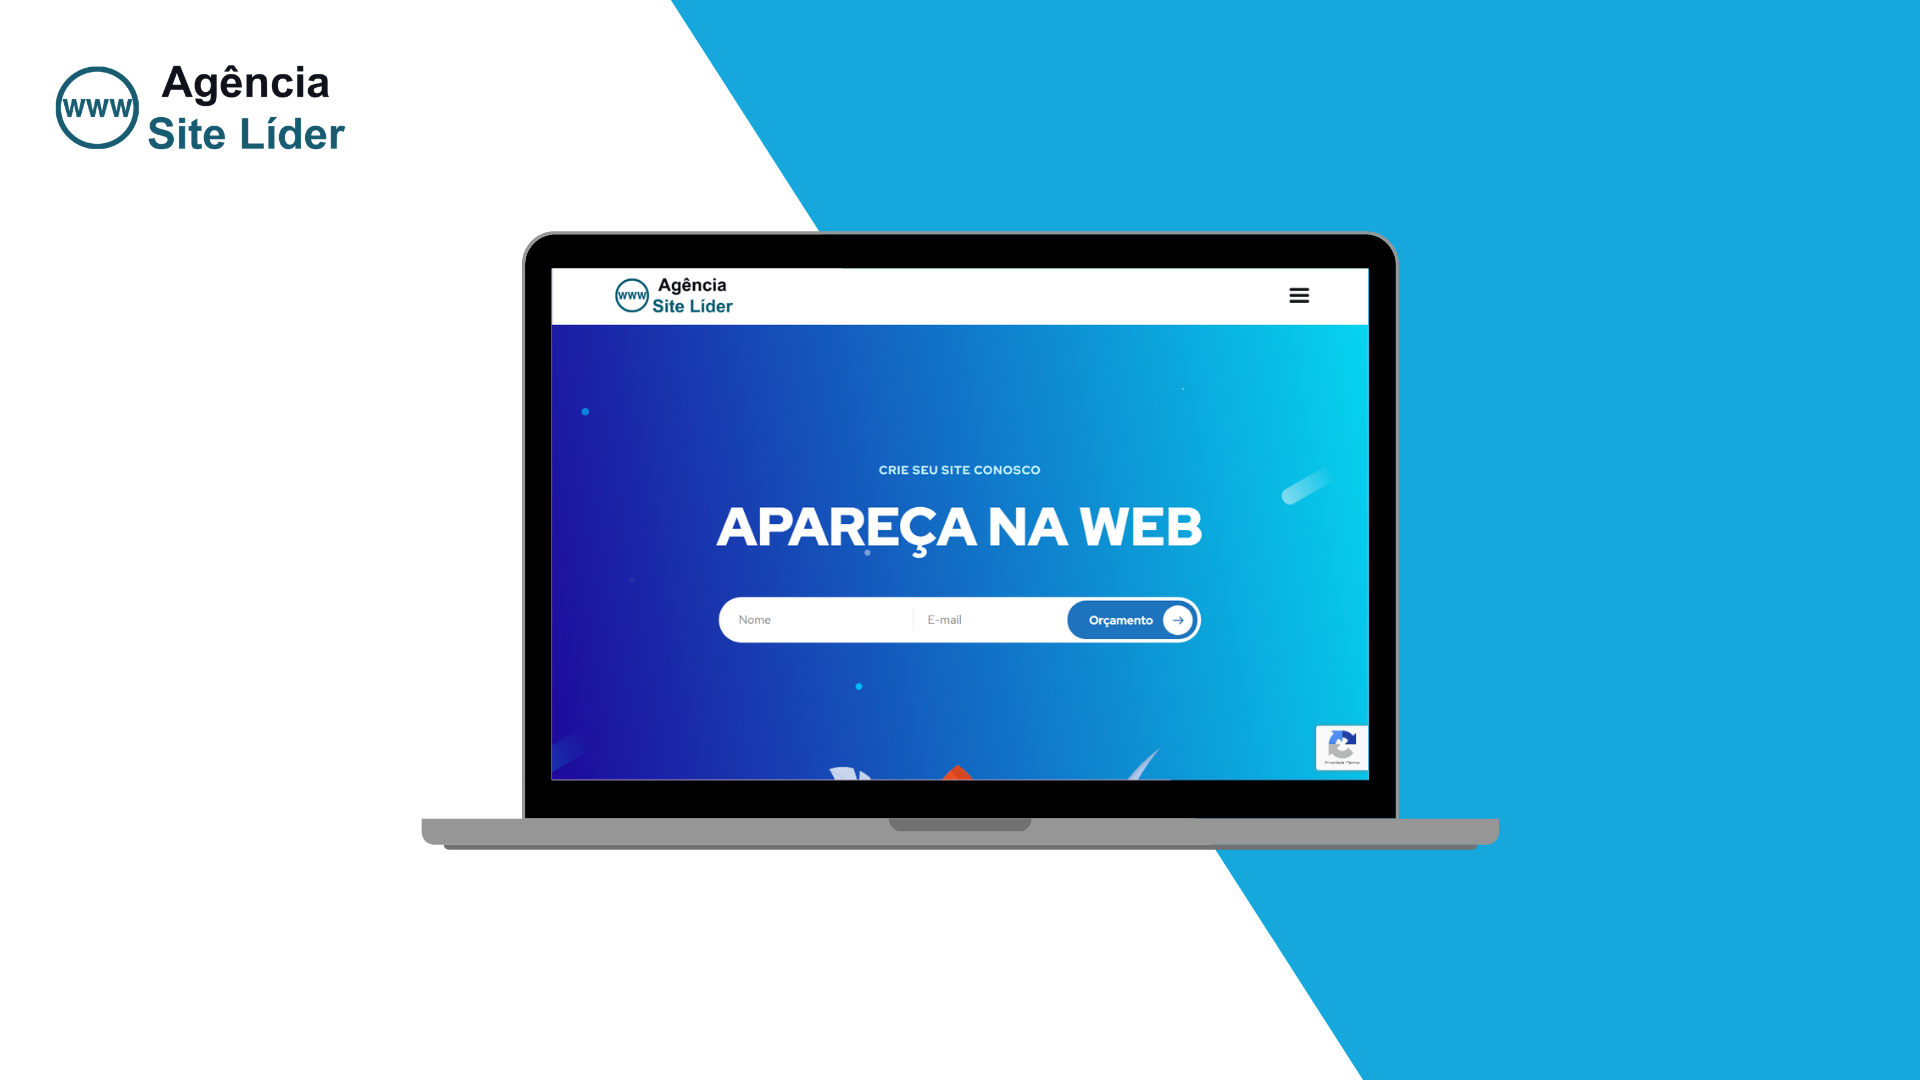 Criamos Seu Aplicativo de Sites, Loja Virtual E Outros. - Serviços - Brasil  Industrial (Barreiro), Belo Horizonte 1248013241